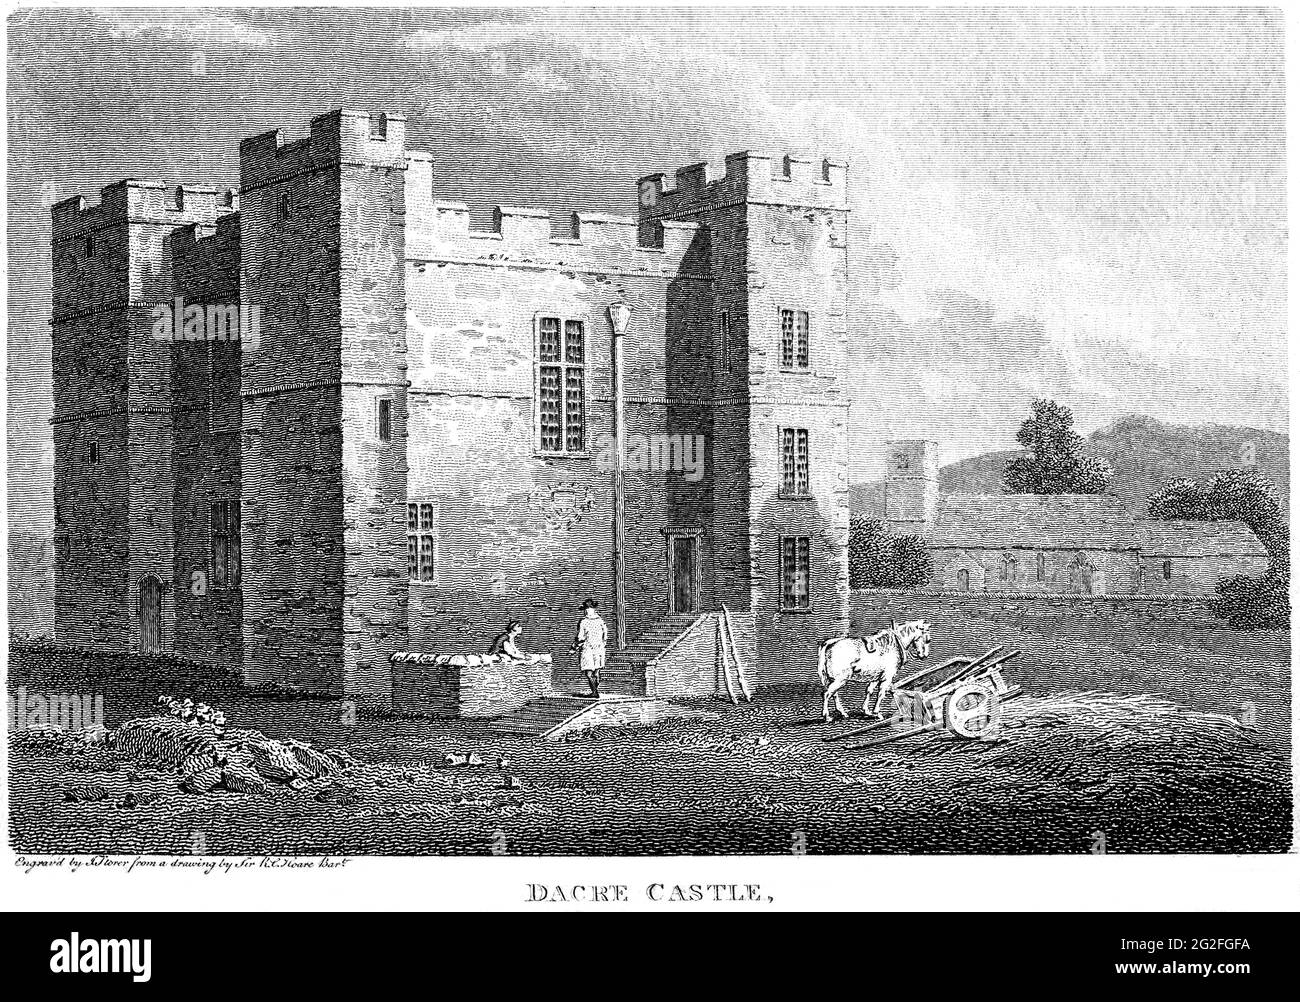 Un grabado del Castillo de Dacre, Cumberland escaneó a alta resolución de un libro impreso en 1812. Se cree que esta imagen está libre de todos los cop históricos Foto de stock